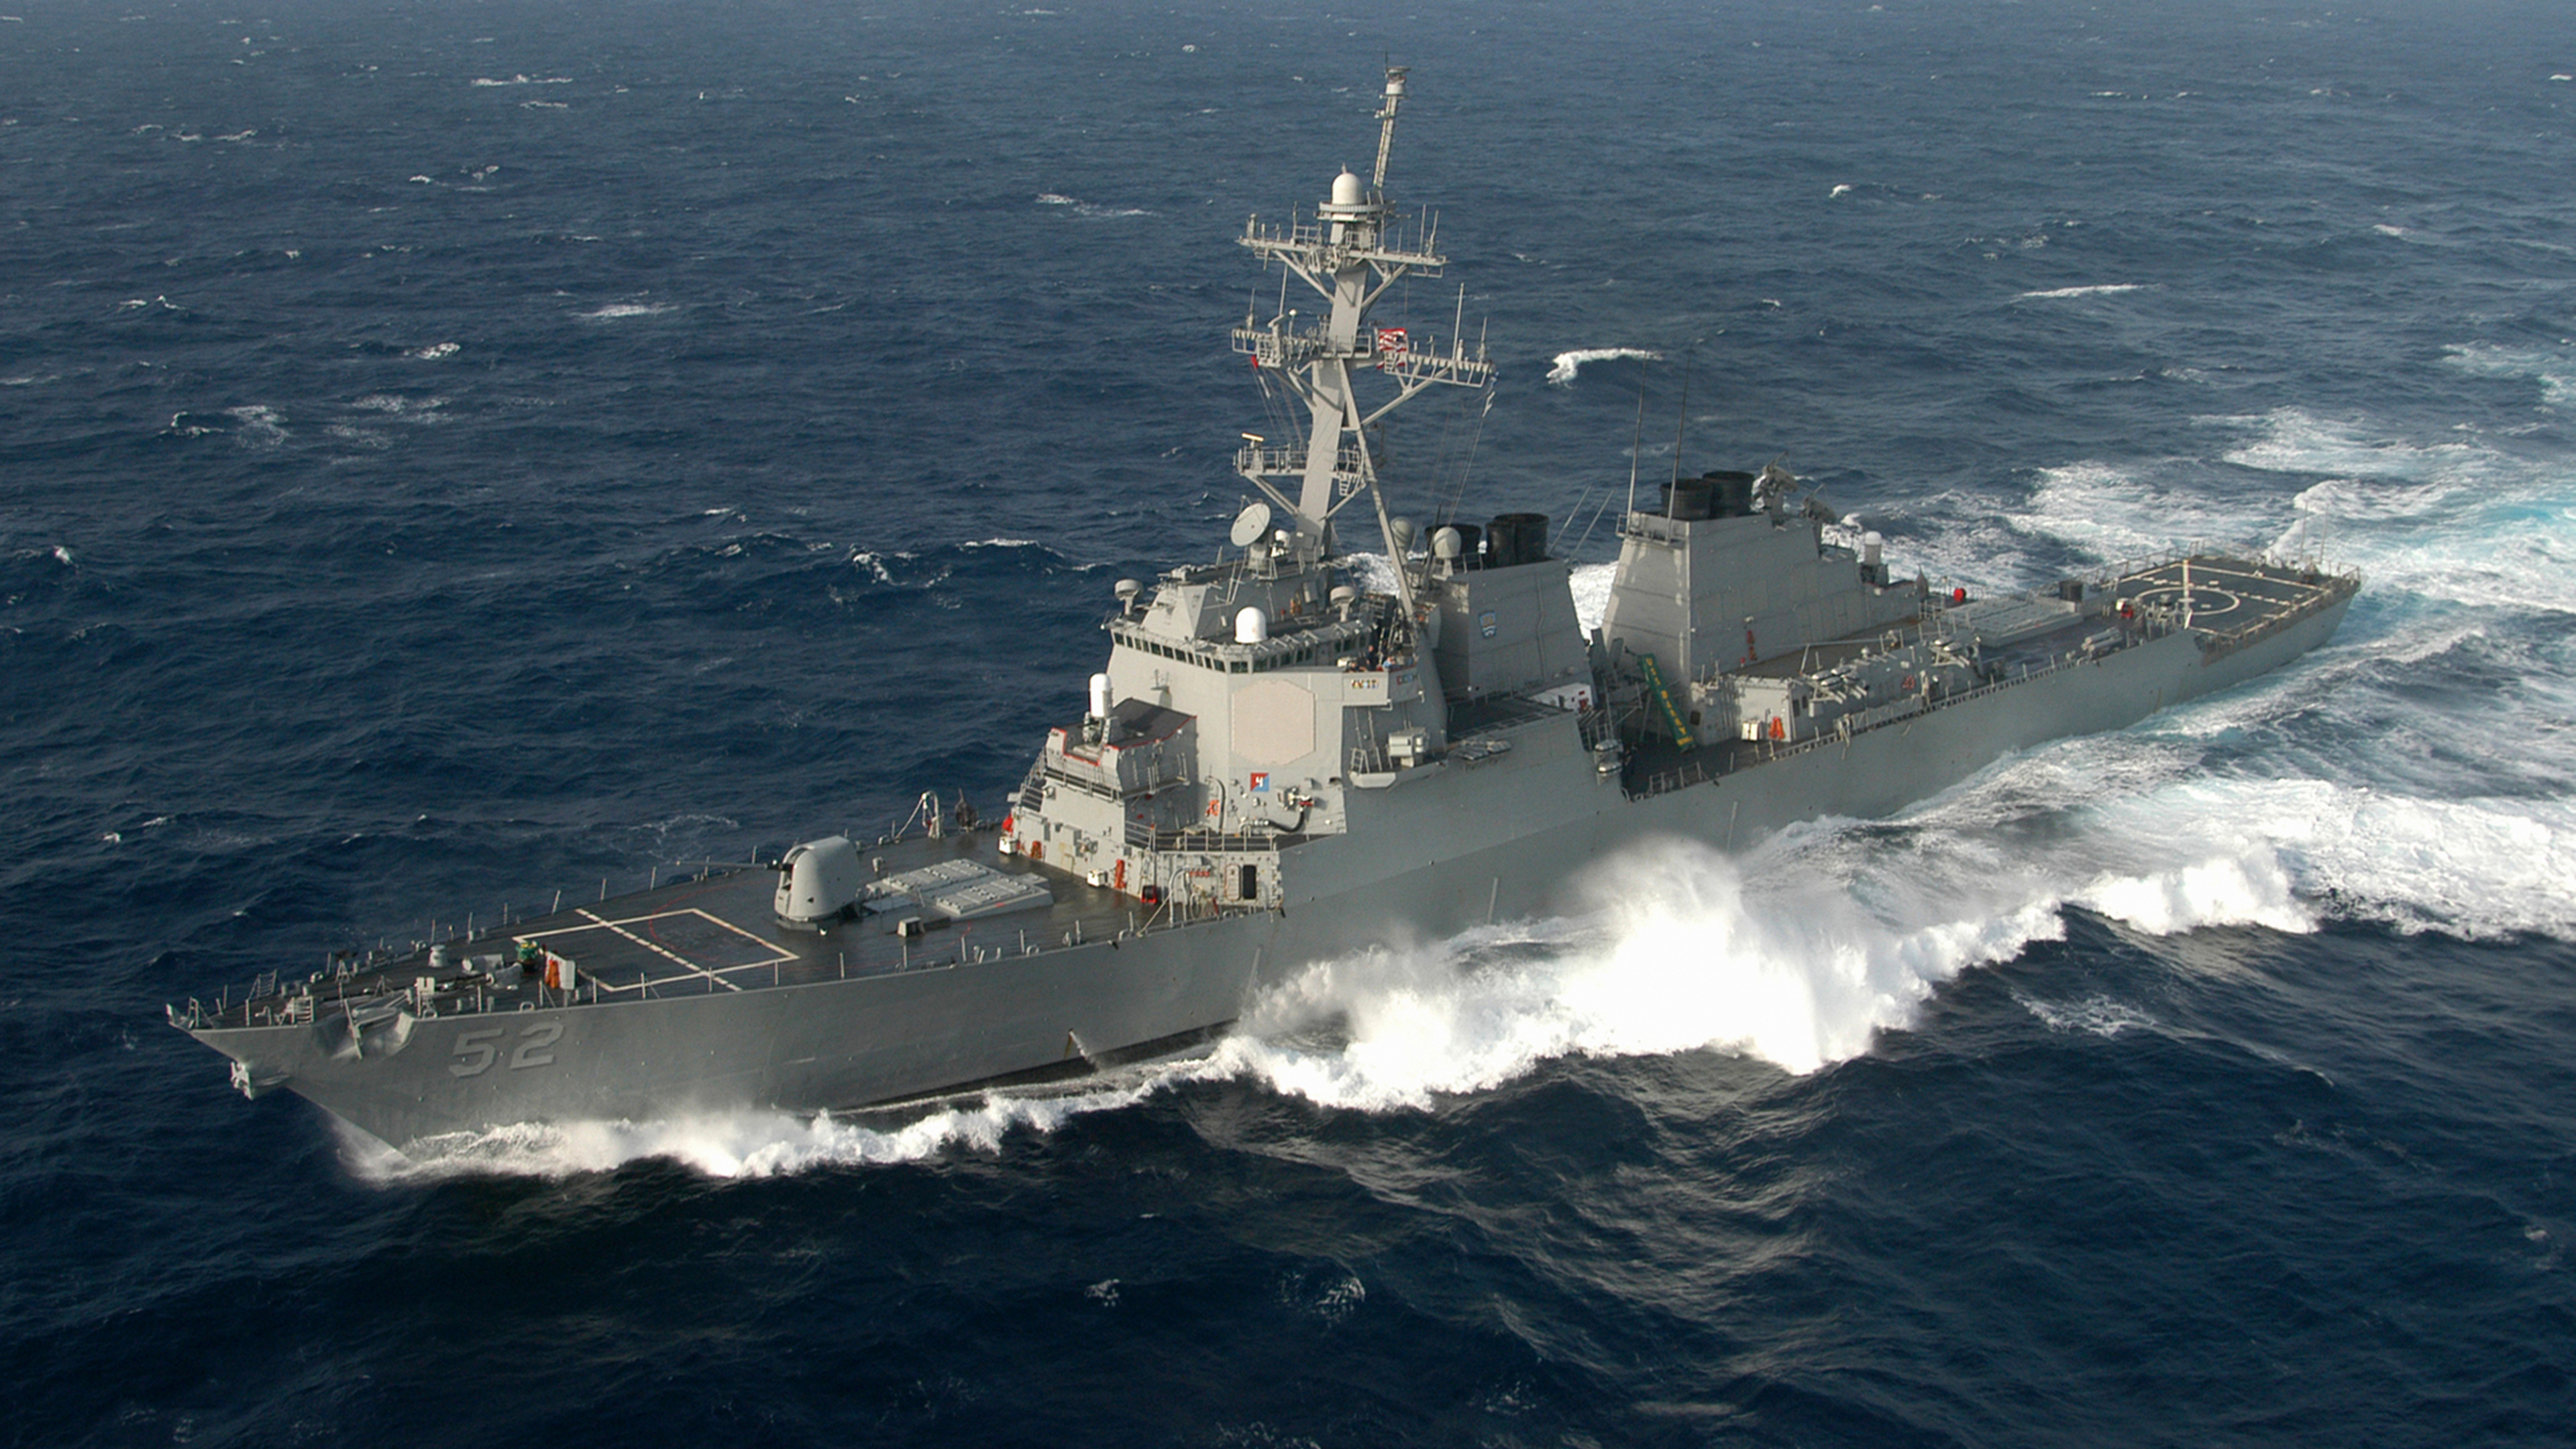 驱逐舰, 美国海军, 军舰, 海军的船, 海军 壁纸 3840x2160 允许